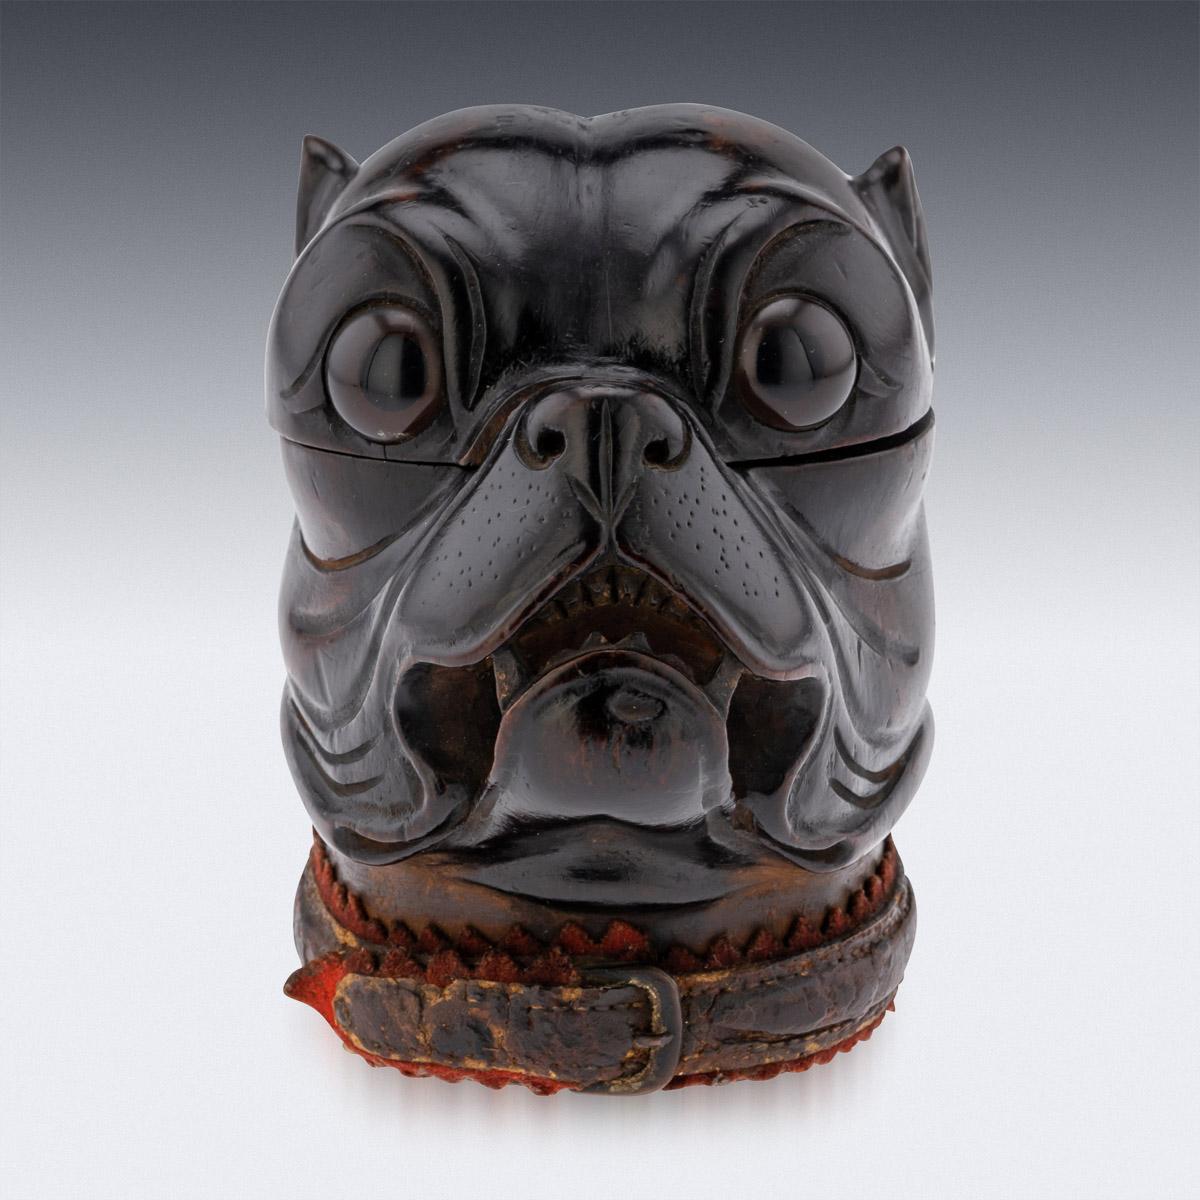 Viktorianisches Lignum-vitae-Tintenfass aus dem 19. Jahrhundert, modelliert als Kopf einer knurrenden Bulldogge mit realistisch eingesetzten Glasaugen, originales Lederhalsband mit Kupferschnalle. Der Kopf ist aufklappbar und gibt den Blick auf ein